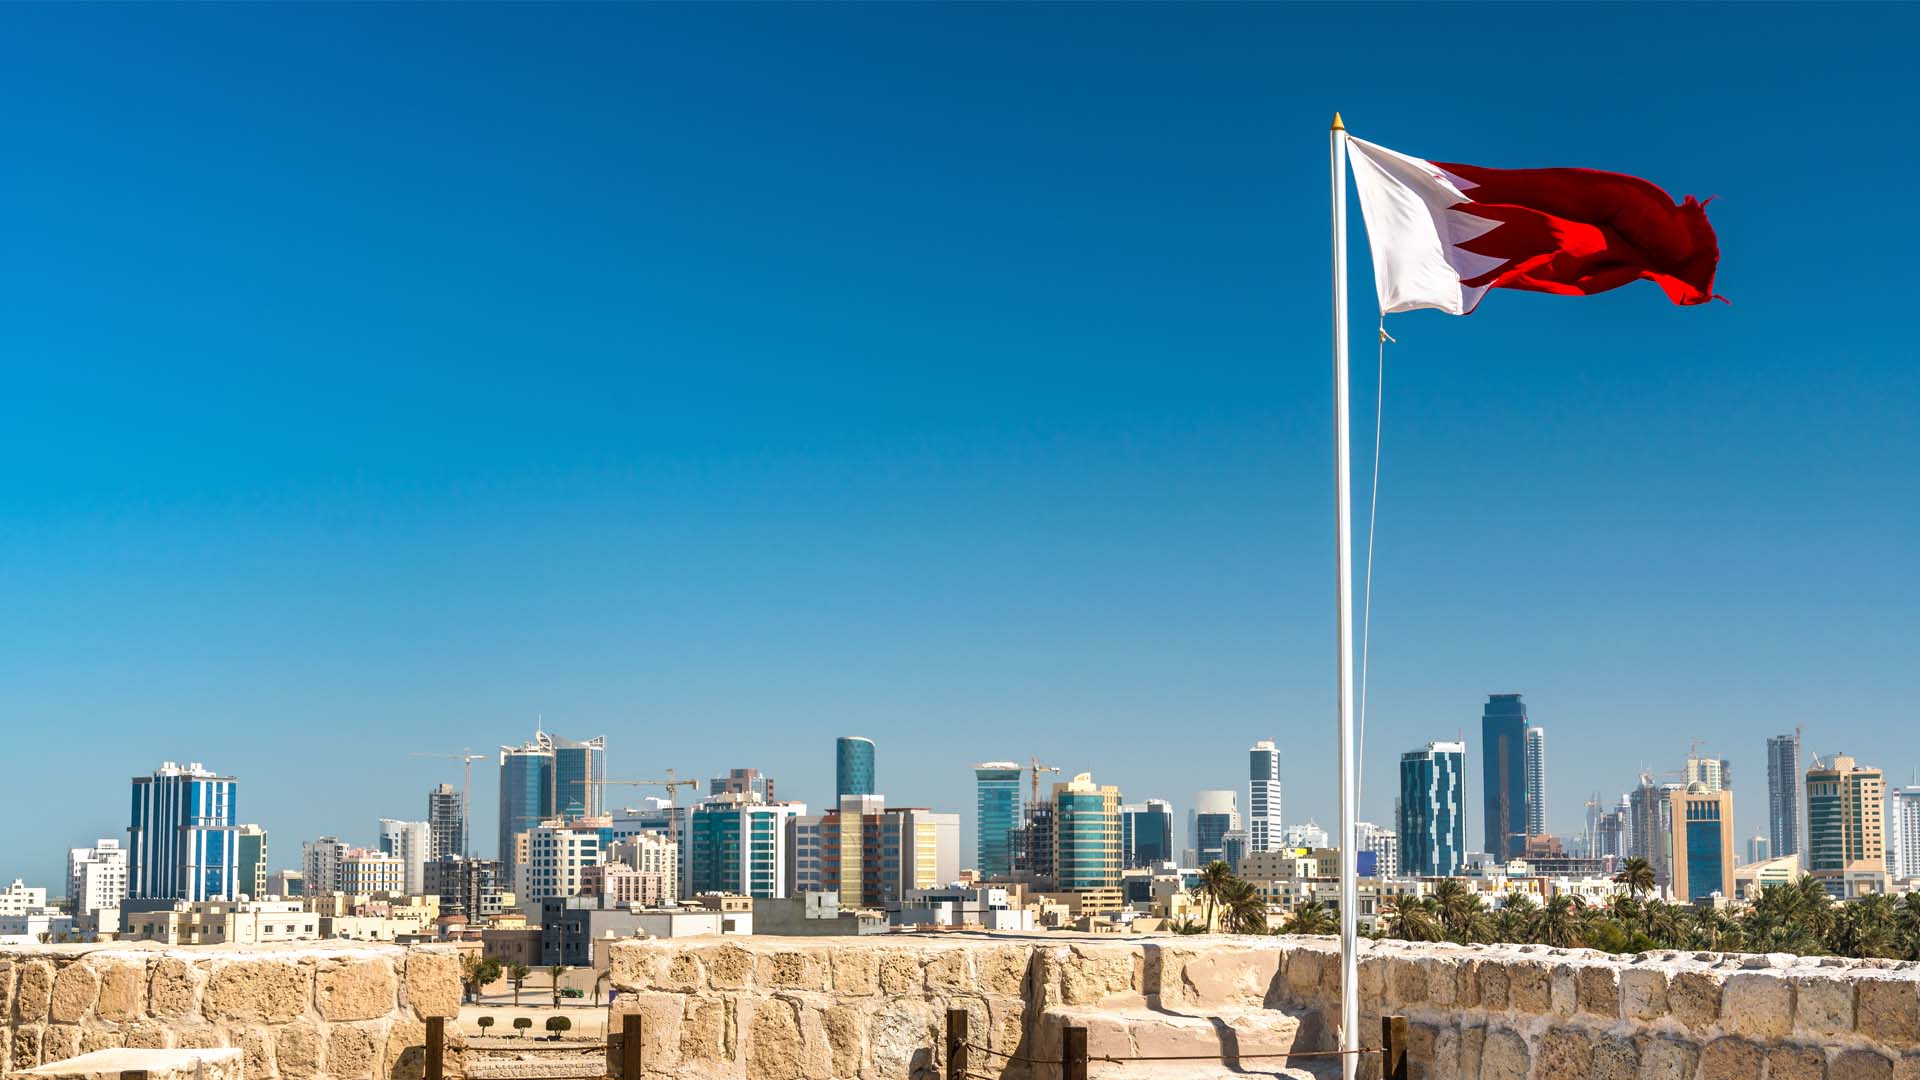  البحرين تدرج كويتيين ضمن قائمة الإرهاب لديها والكثير من الجنسيات الأخرى